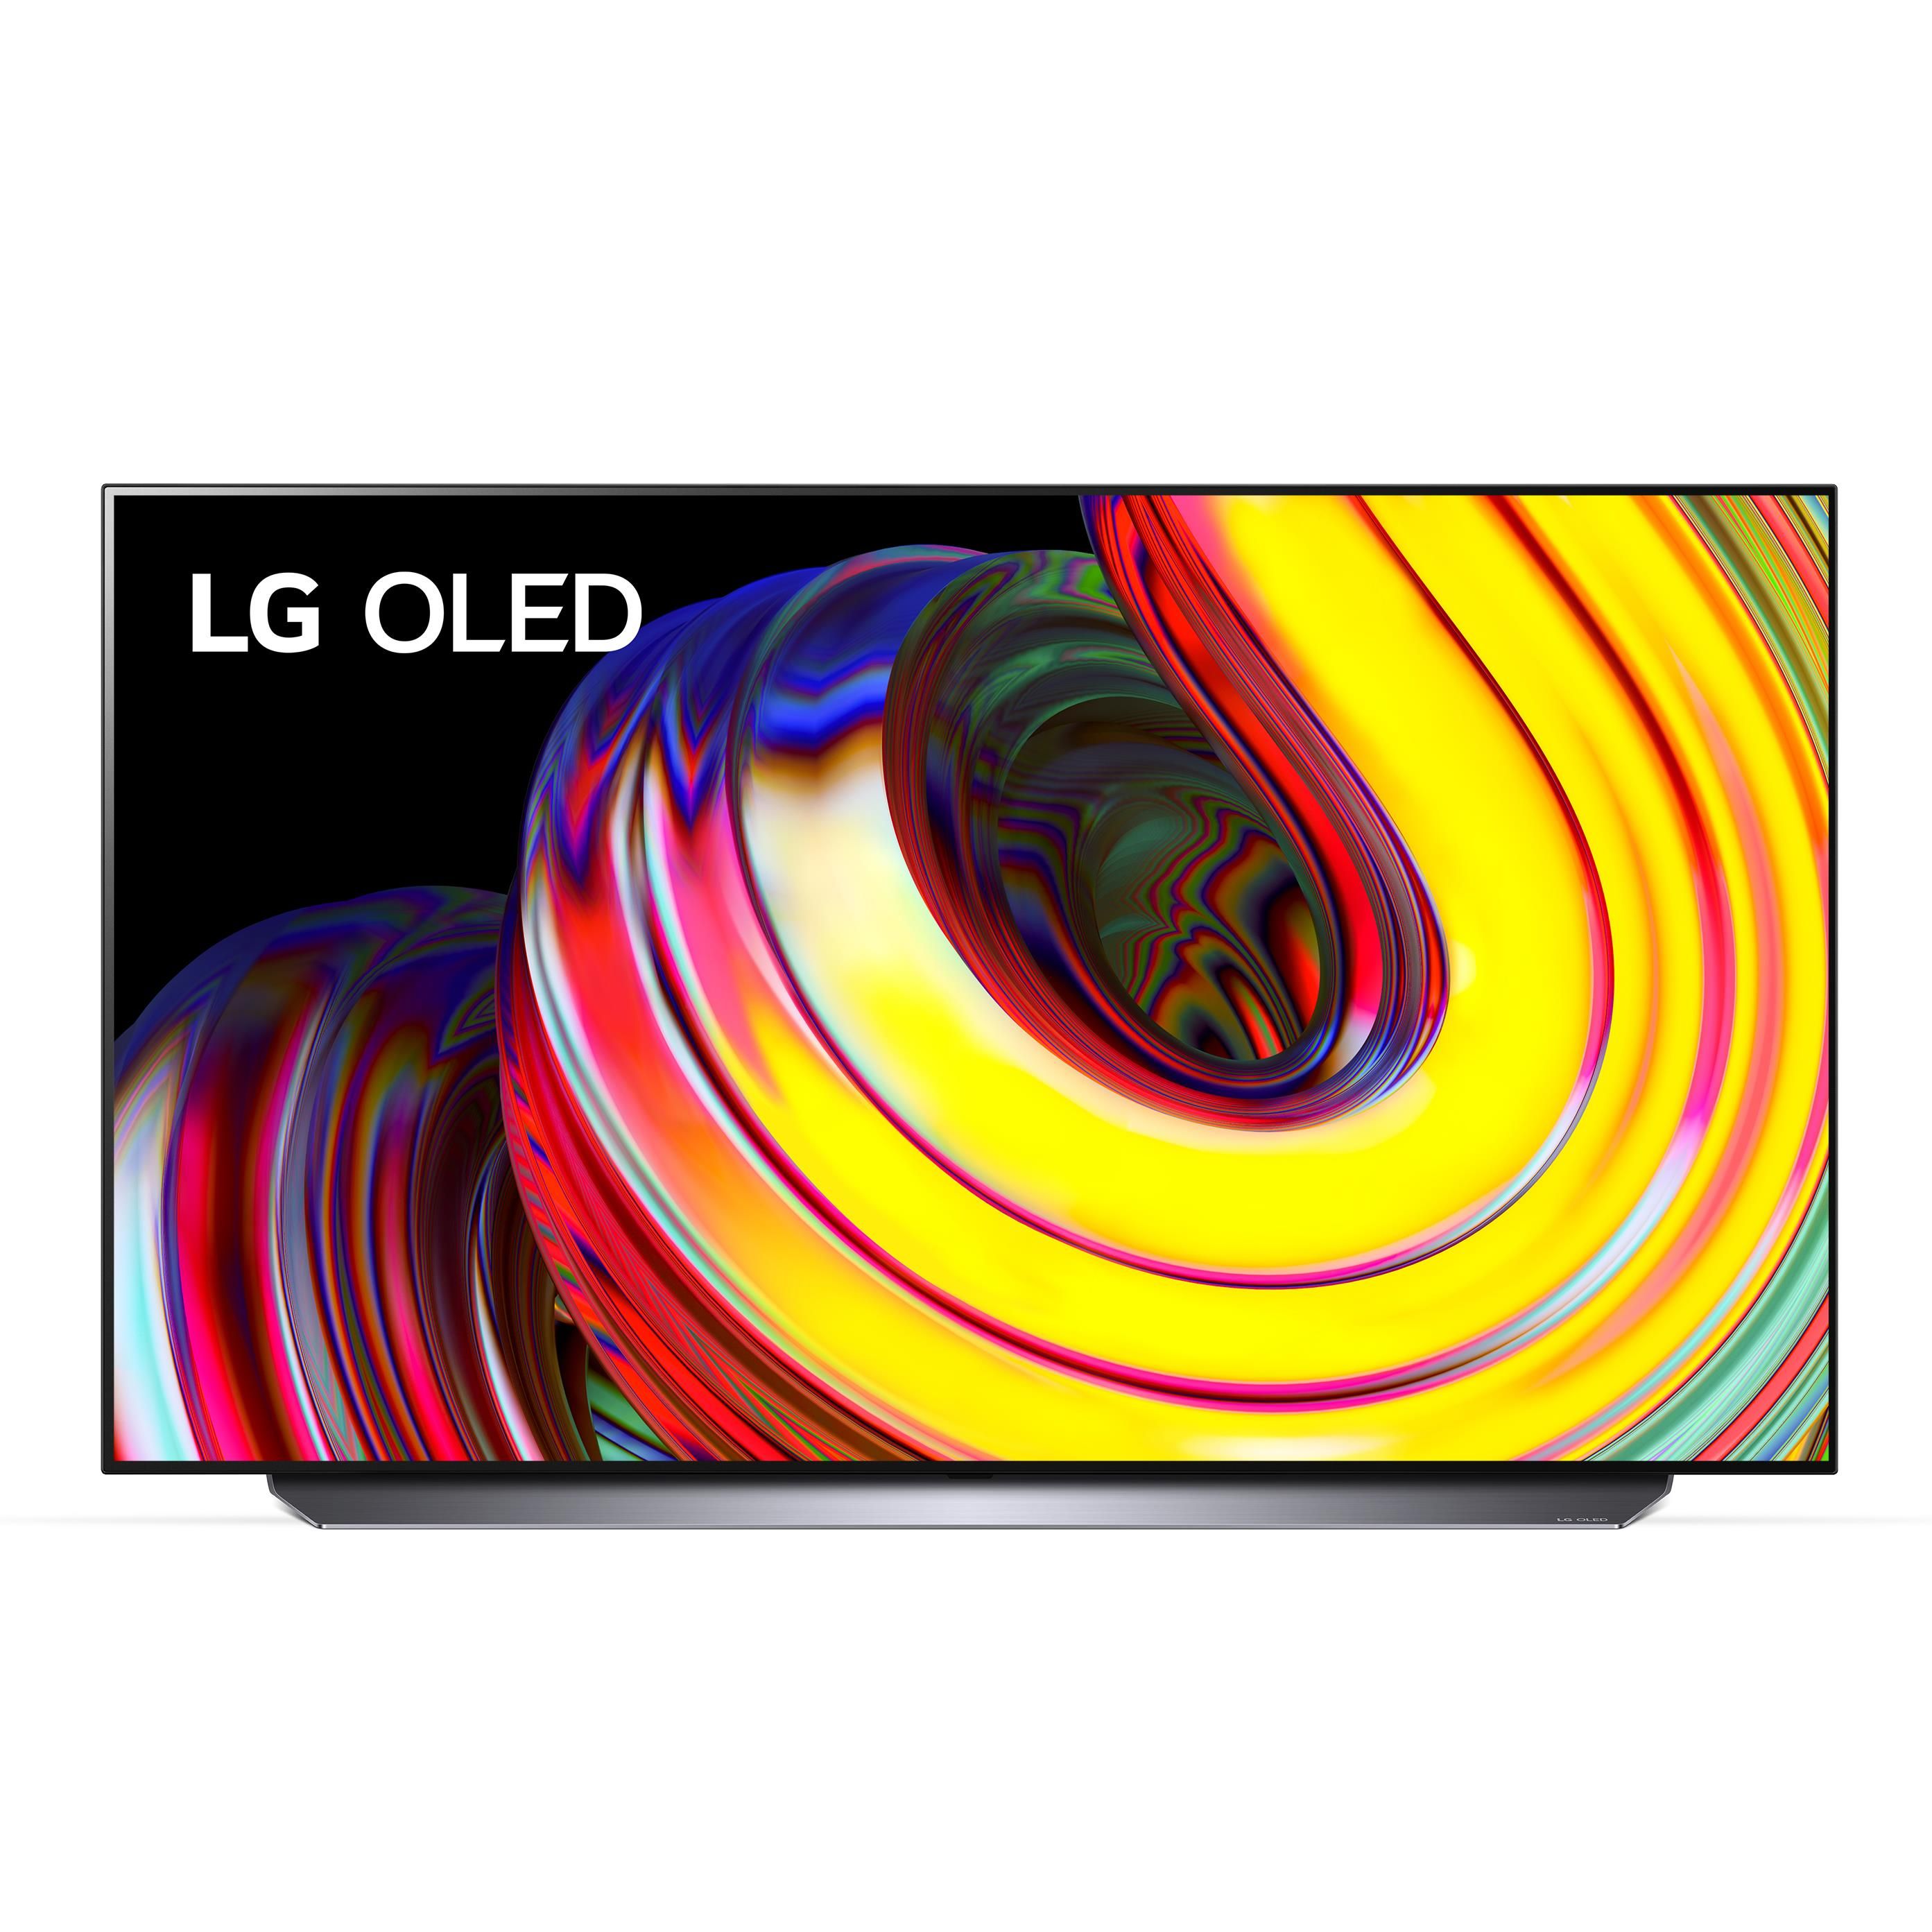 LG OLed 4K Tv